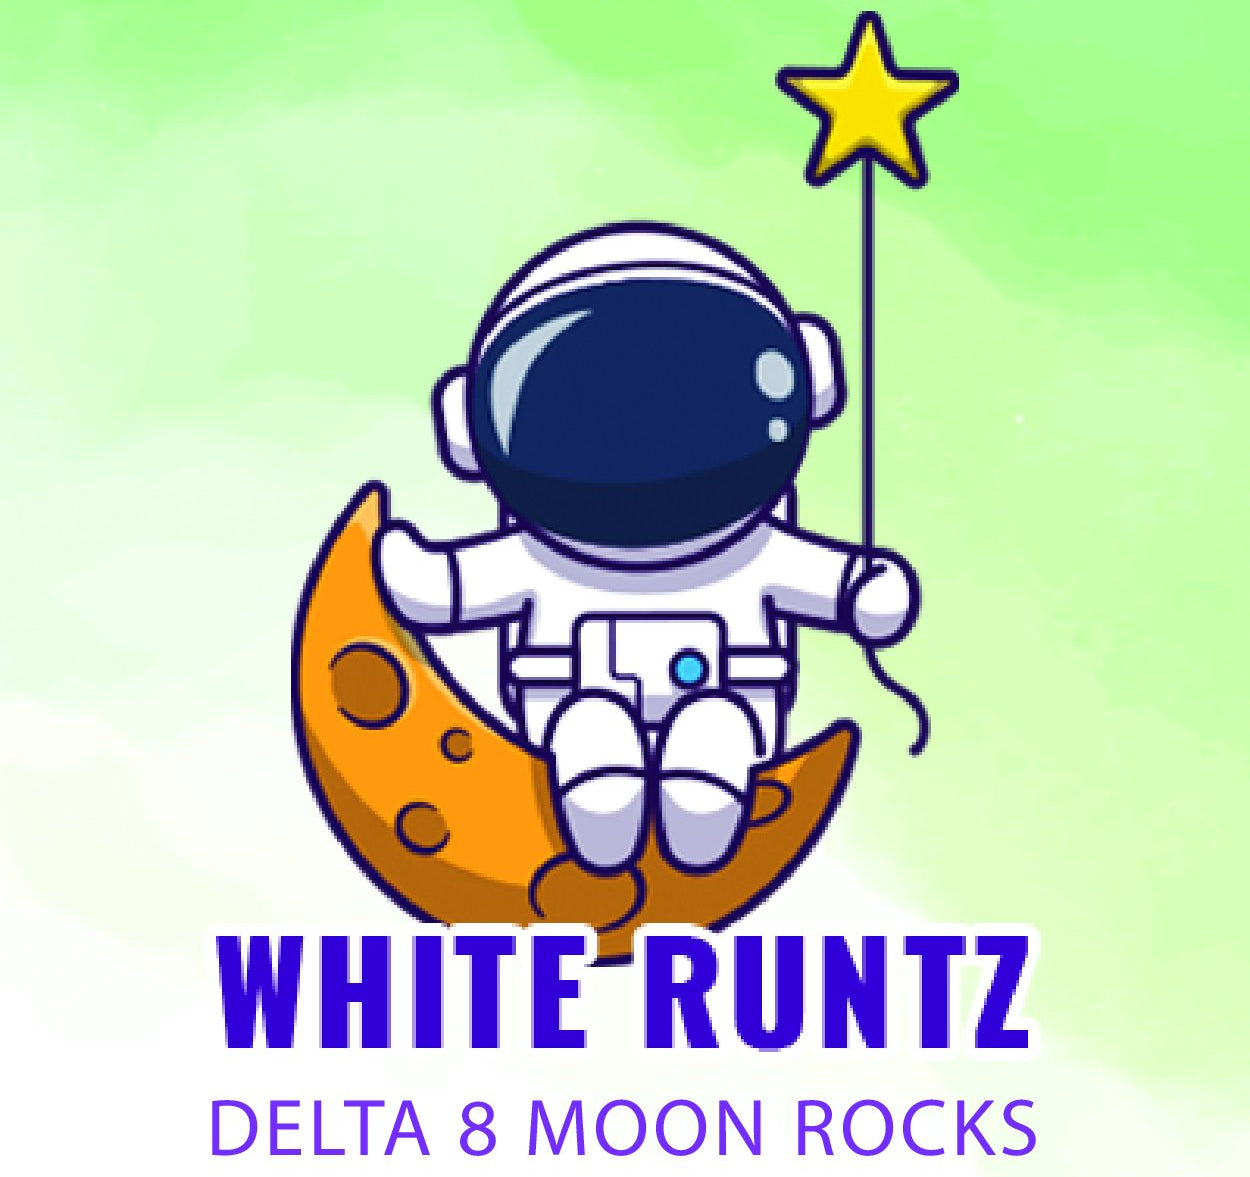 White Runtz Delta 8 Flower is Back!